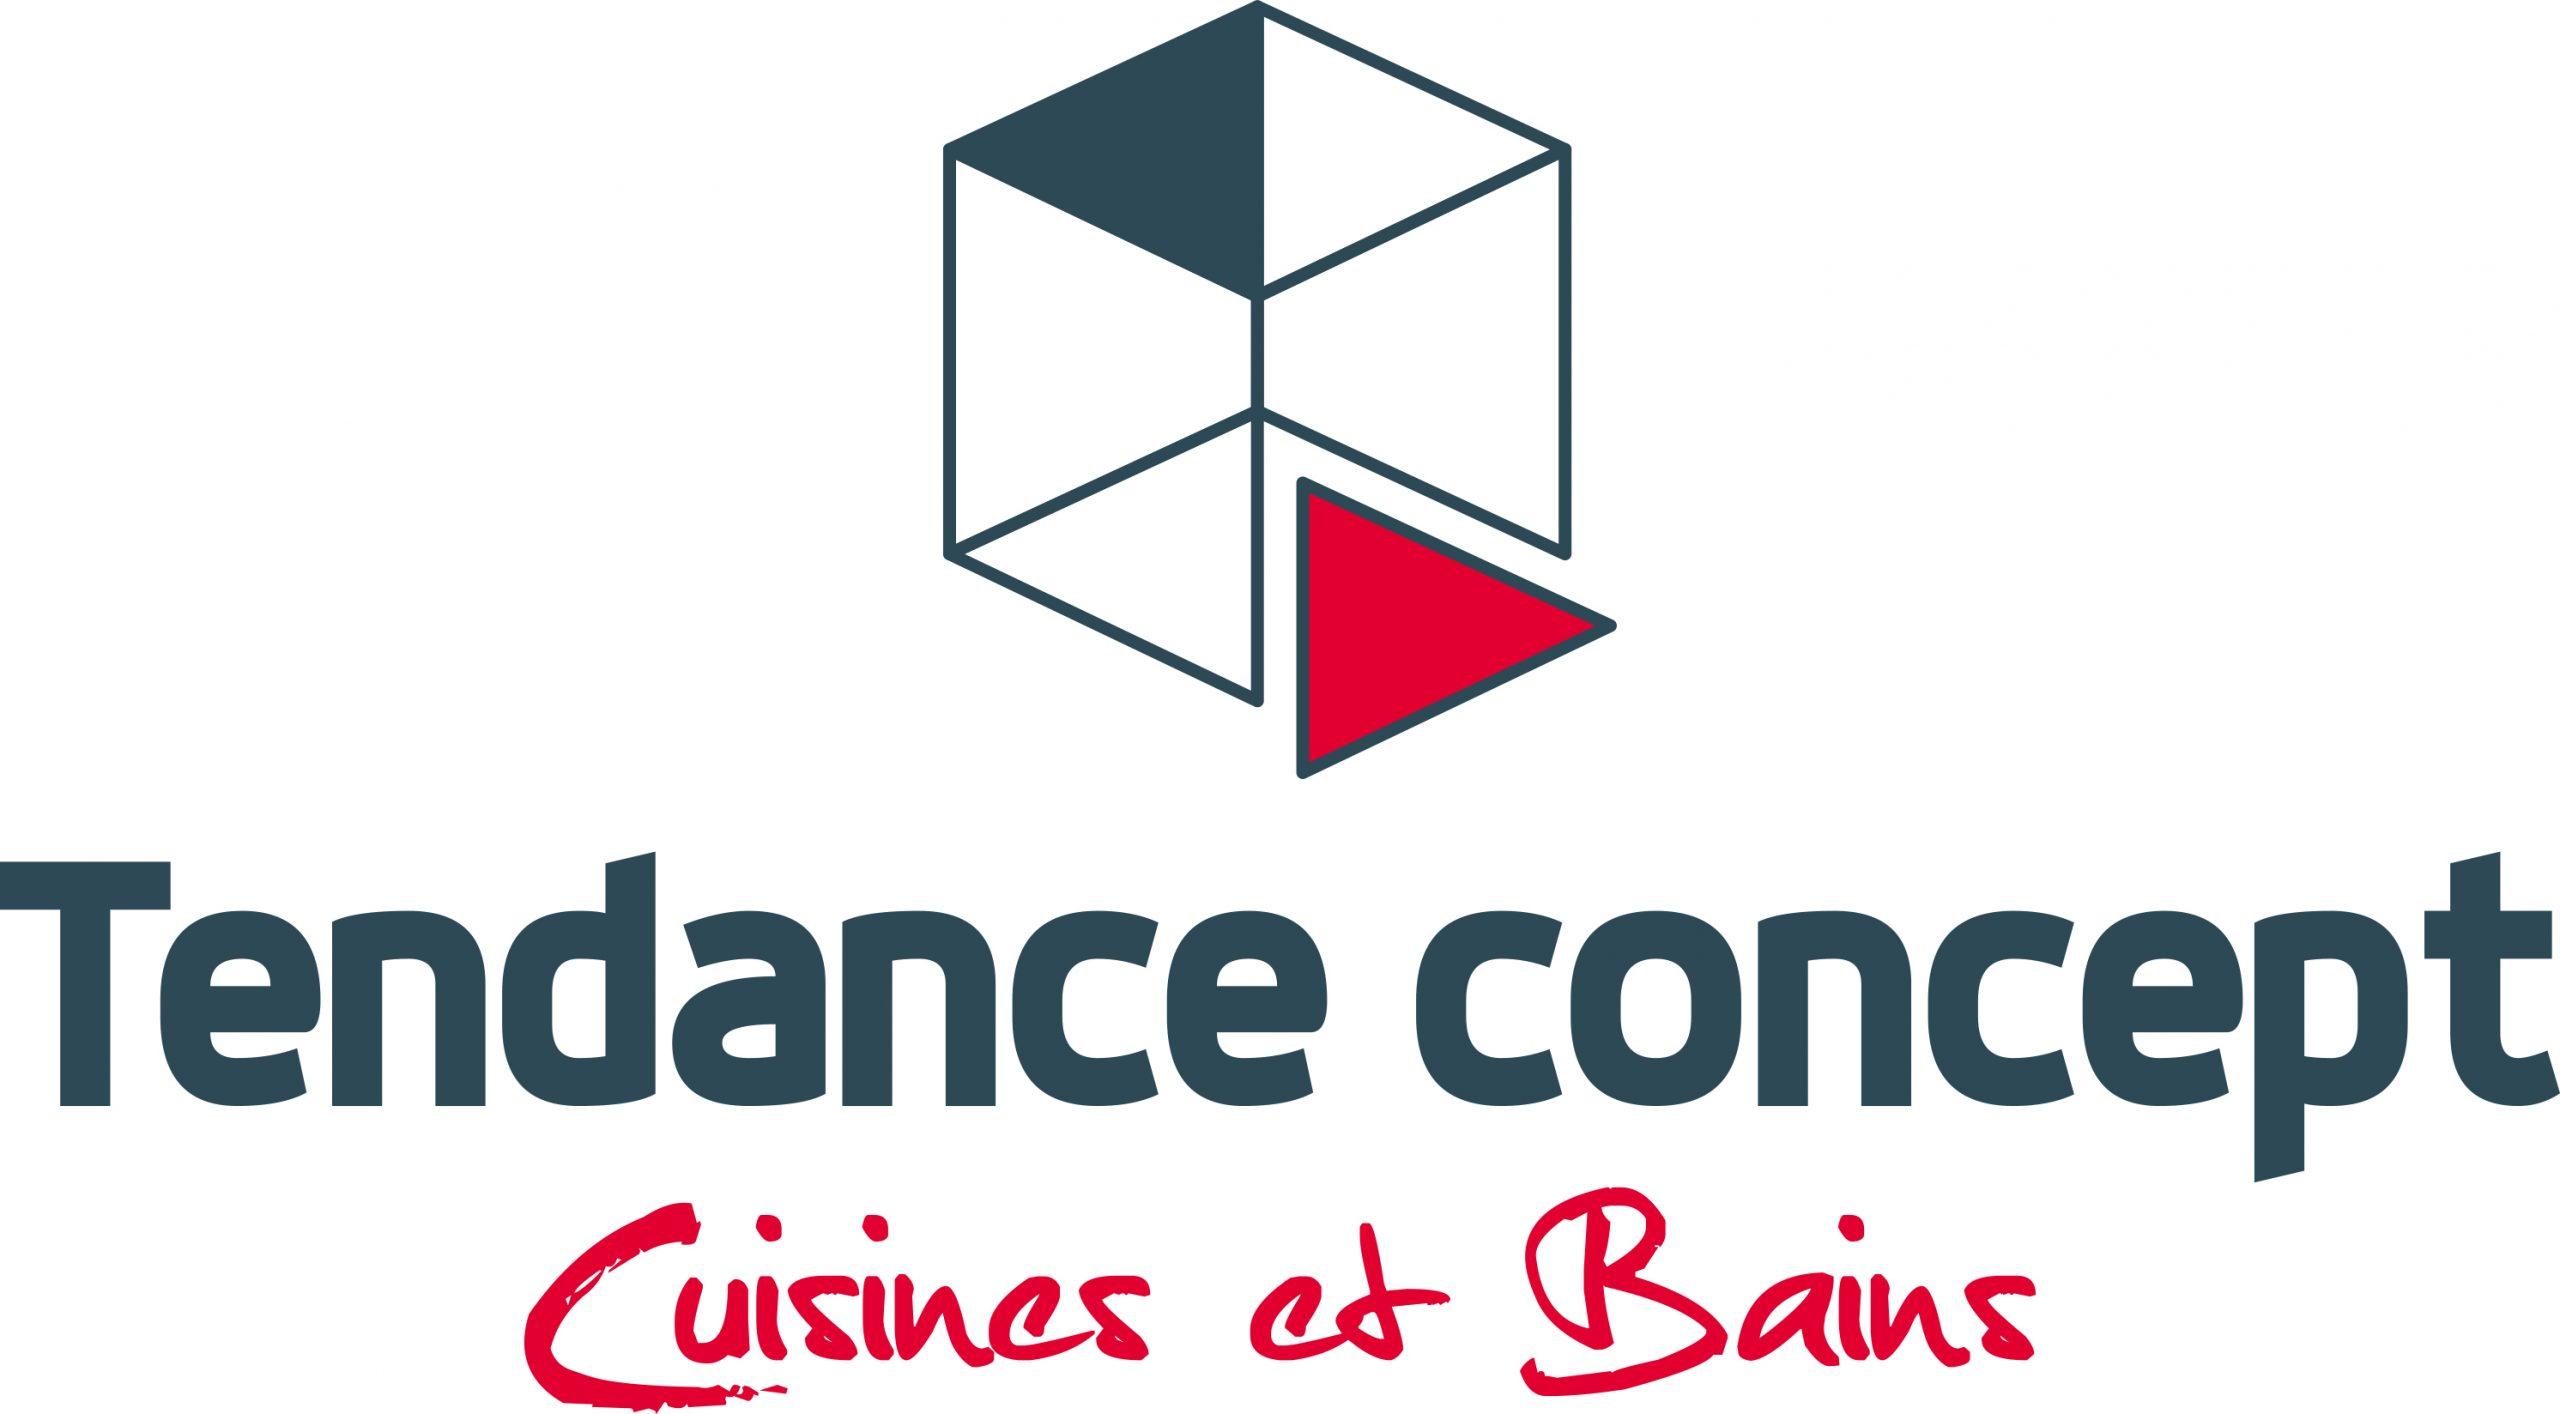 Tendance Concept enseigne Cuisines et Bains logo